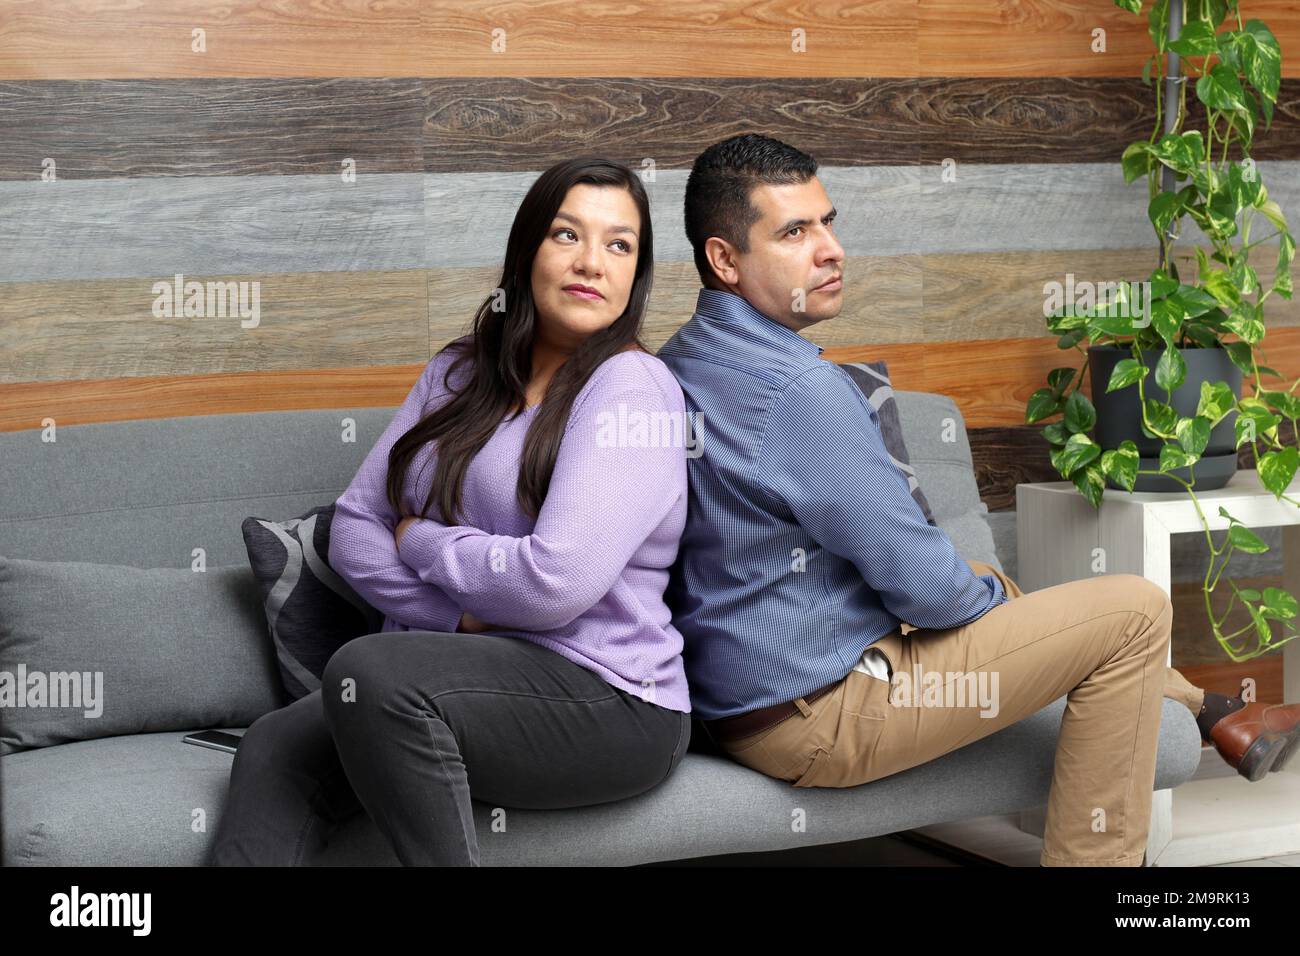 Ein erwachsenes Paar aus Latino, das auf dem Sofa sitzt, ist verärgert und wütend über Probleme, die zu ihrer Trennung führen können Stockfoto